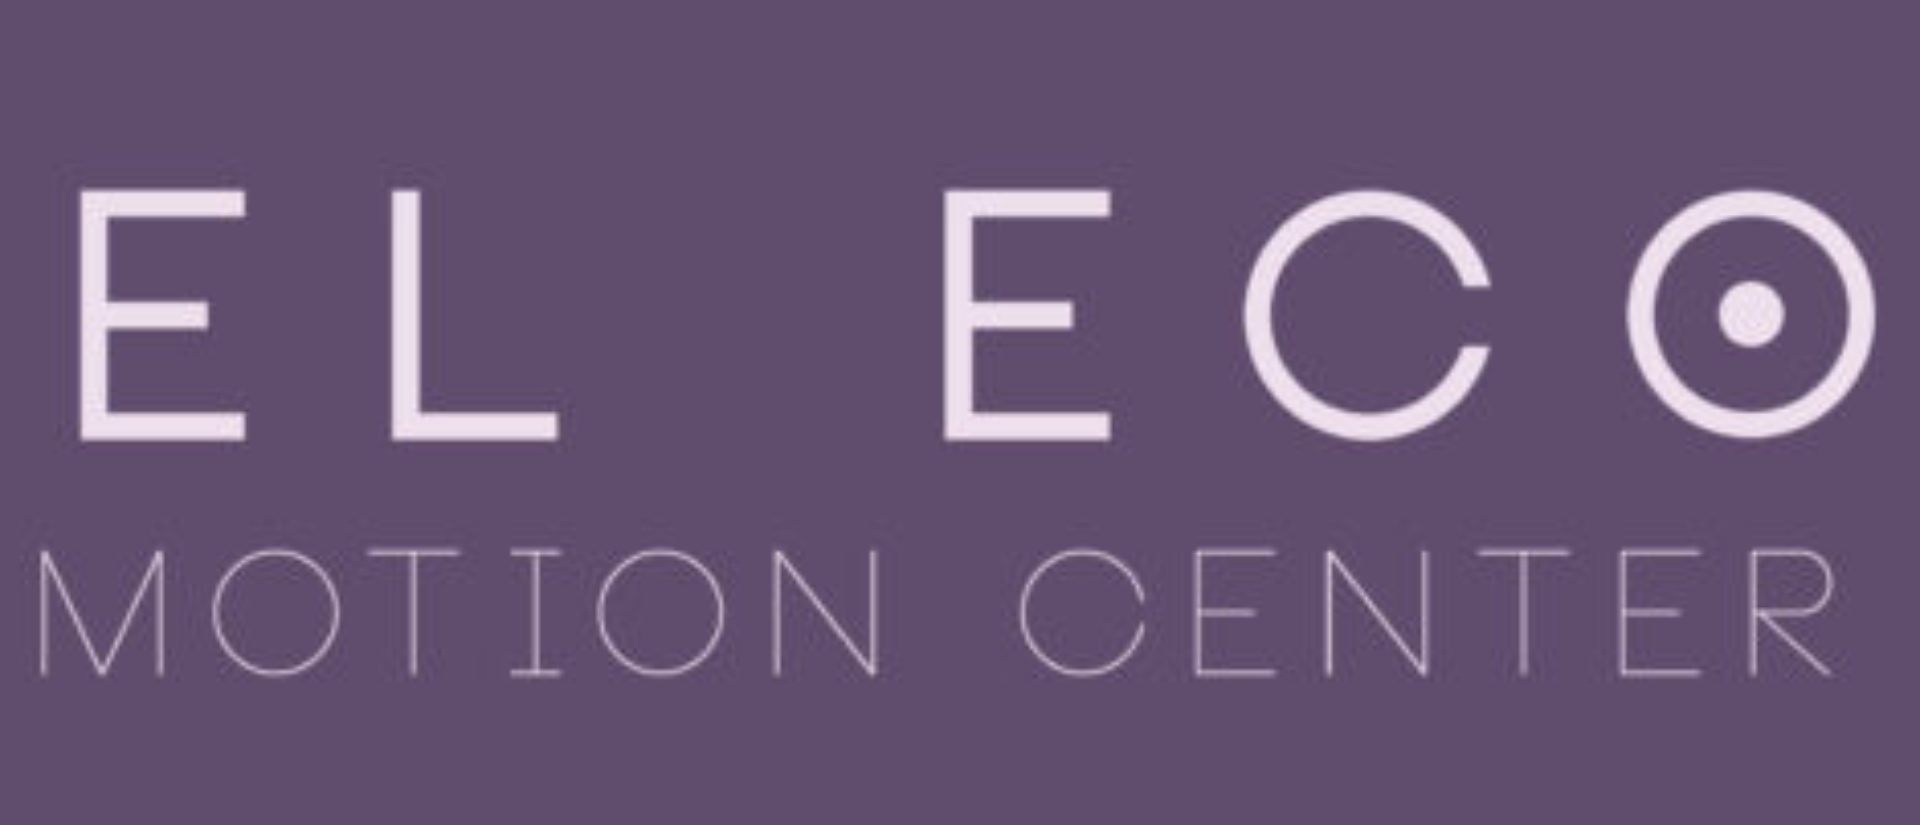 Eco Motion Center